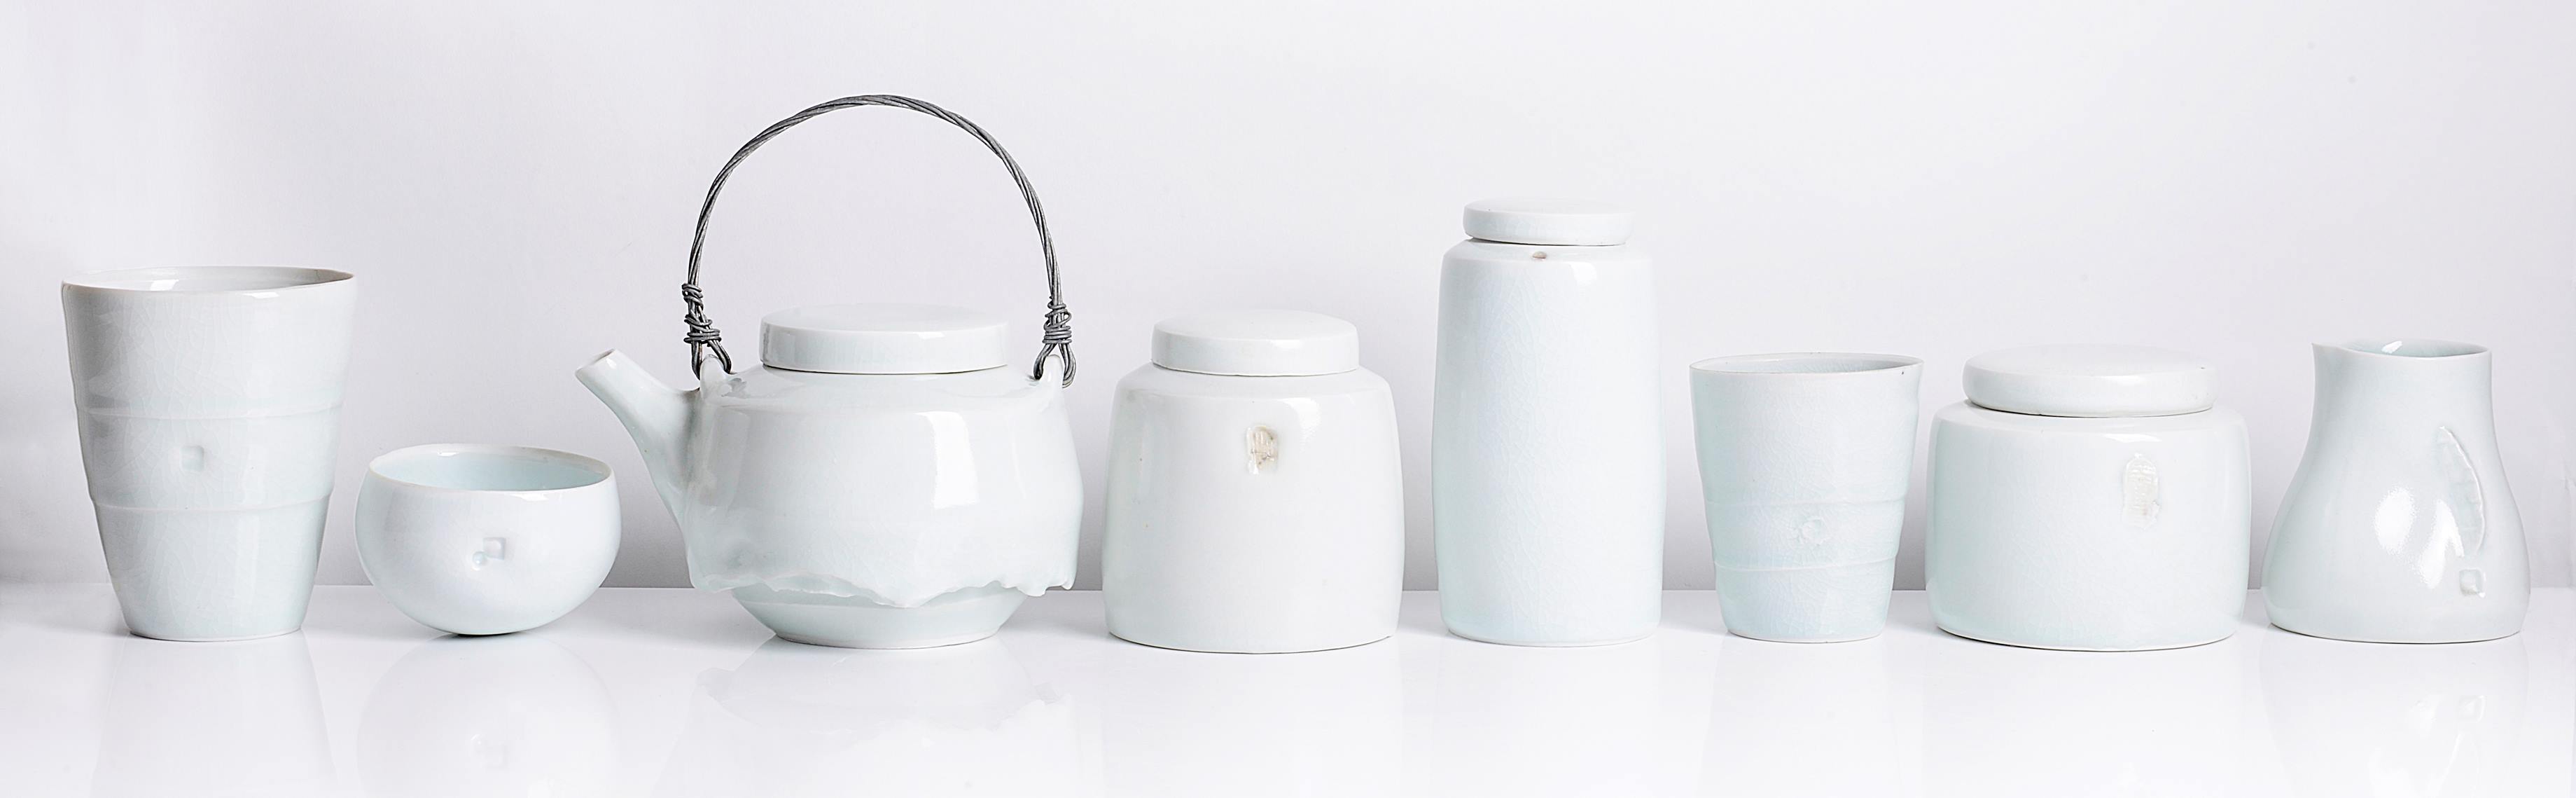 Edmund de Waal Porcelain Vessels - Maak Contemporary Ceramics